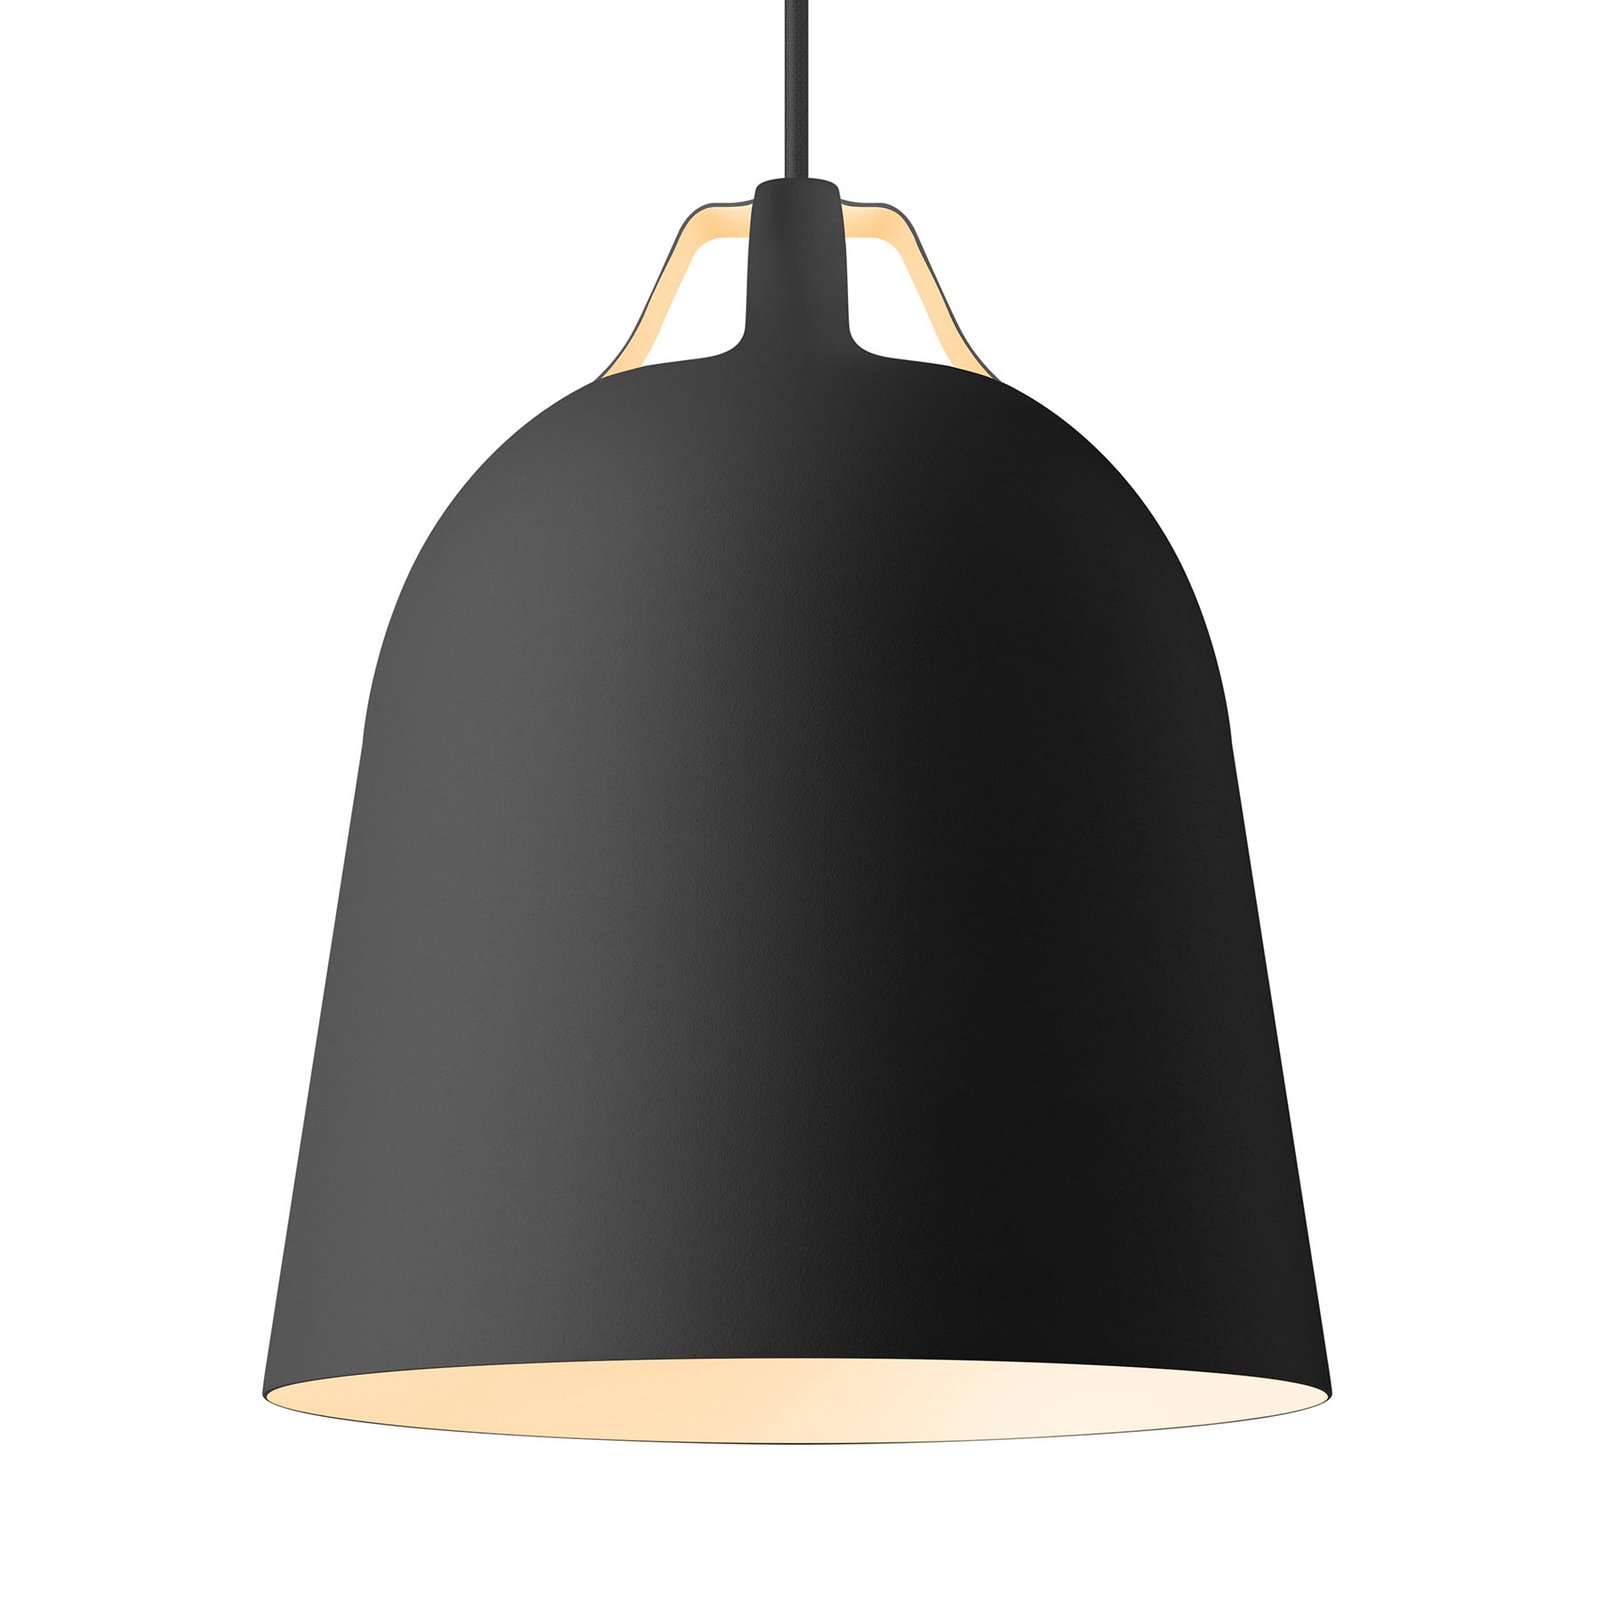 EVA Solo Clover hanglamp Ø 21cm, zwart